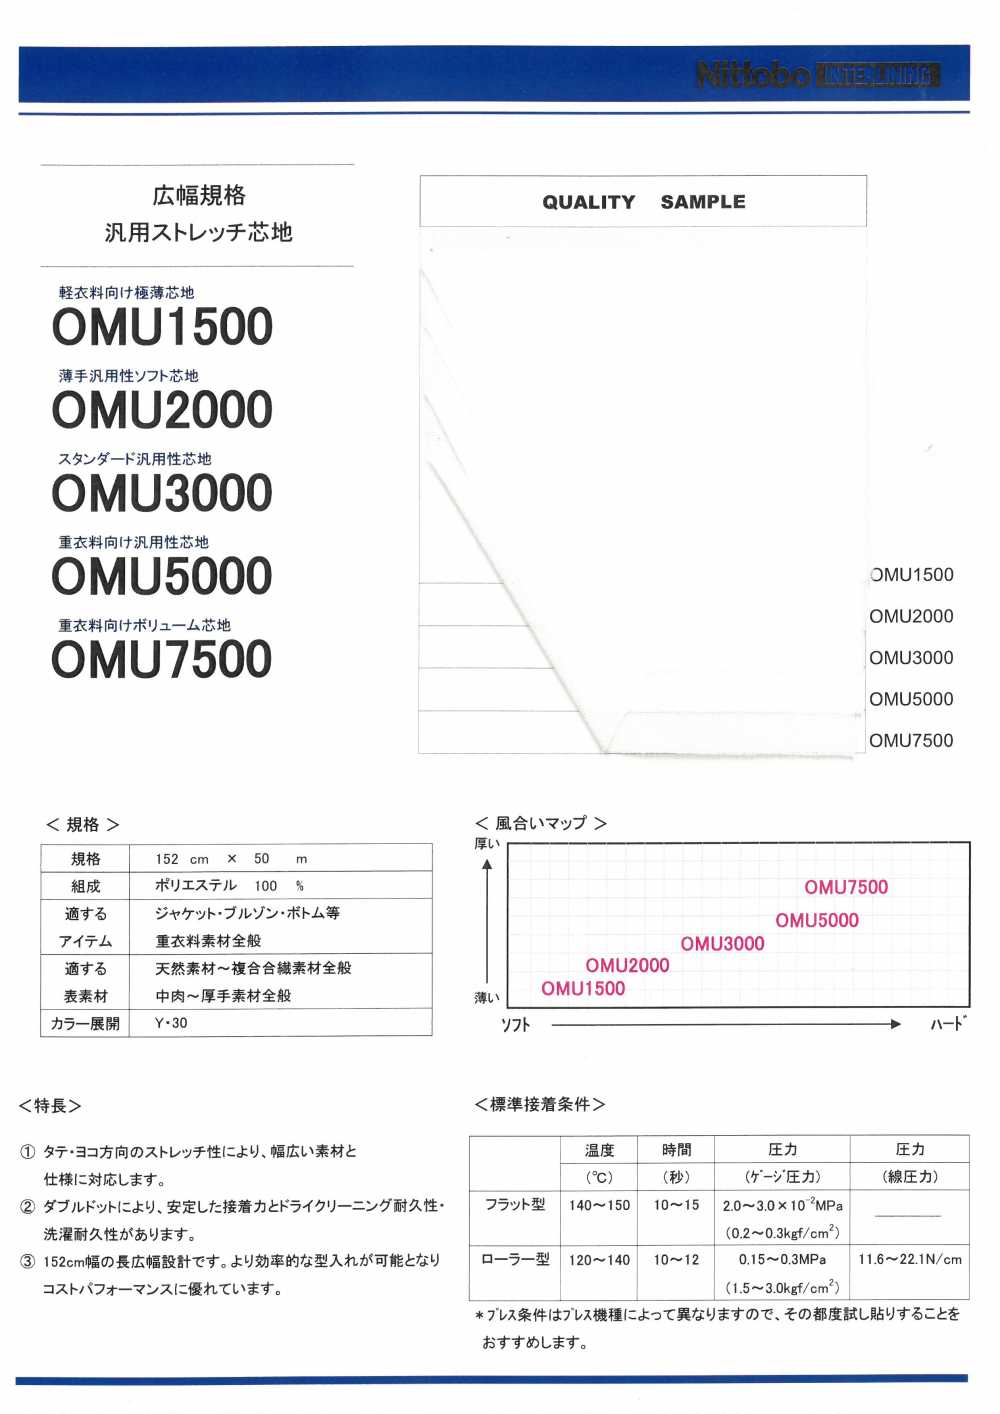 OMU3000 표준 범용성 심지 닛토보 (닛토보인터라이닝)